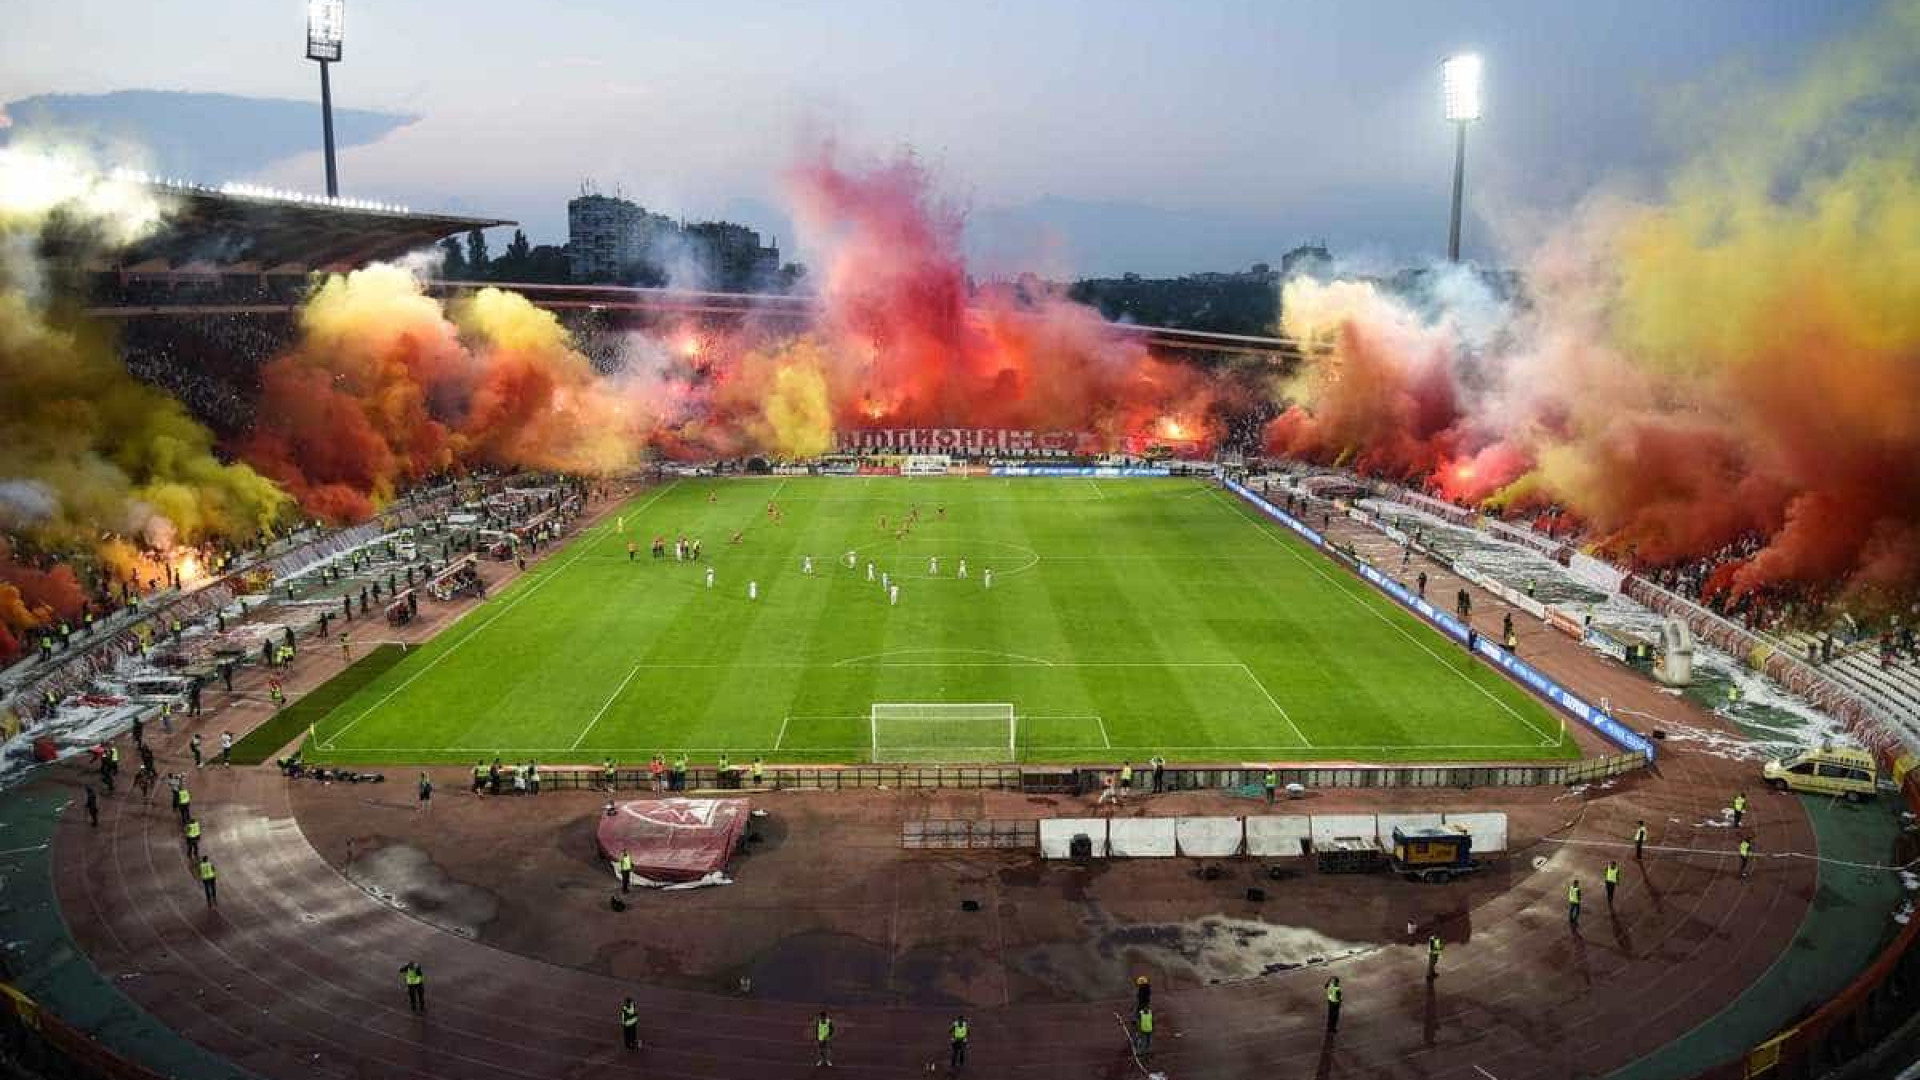 Torcida do Estrela Vermelha faz festa impressionante em estádio; vídeo